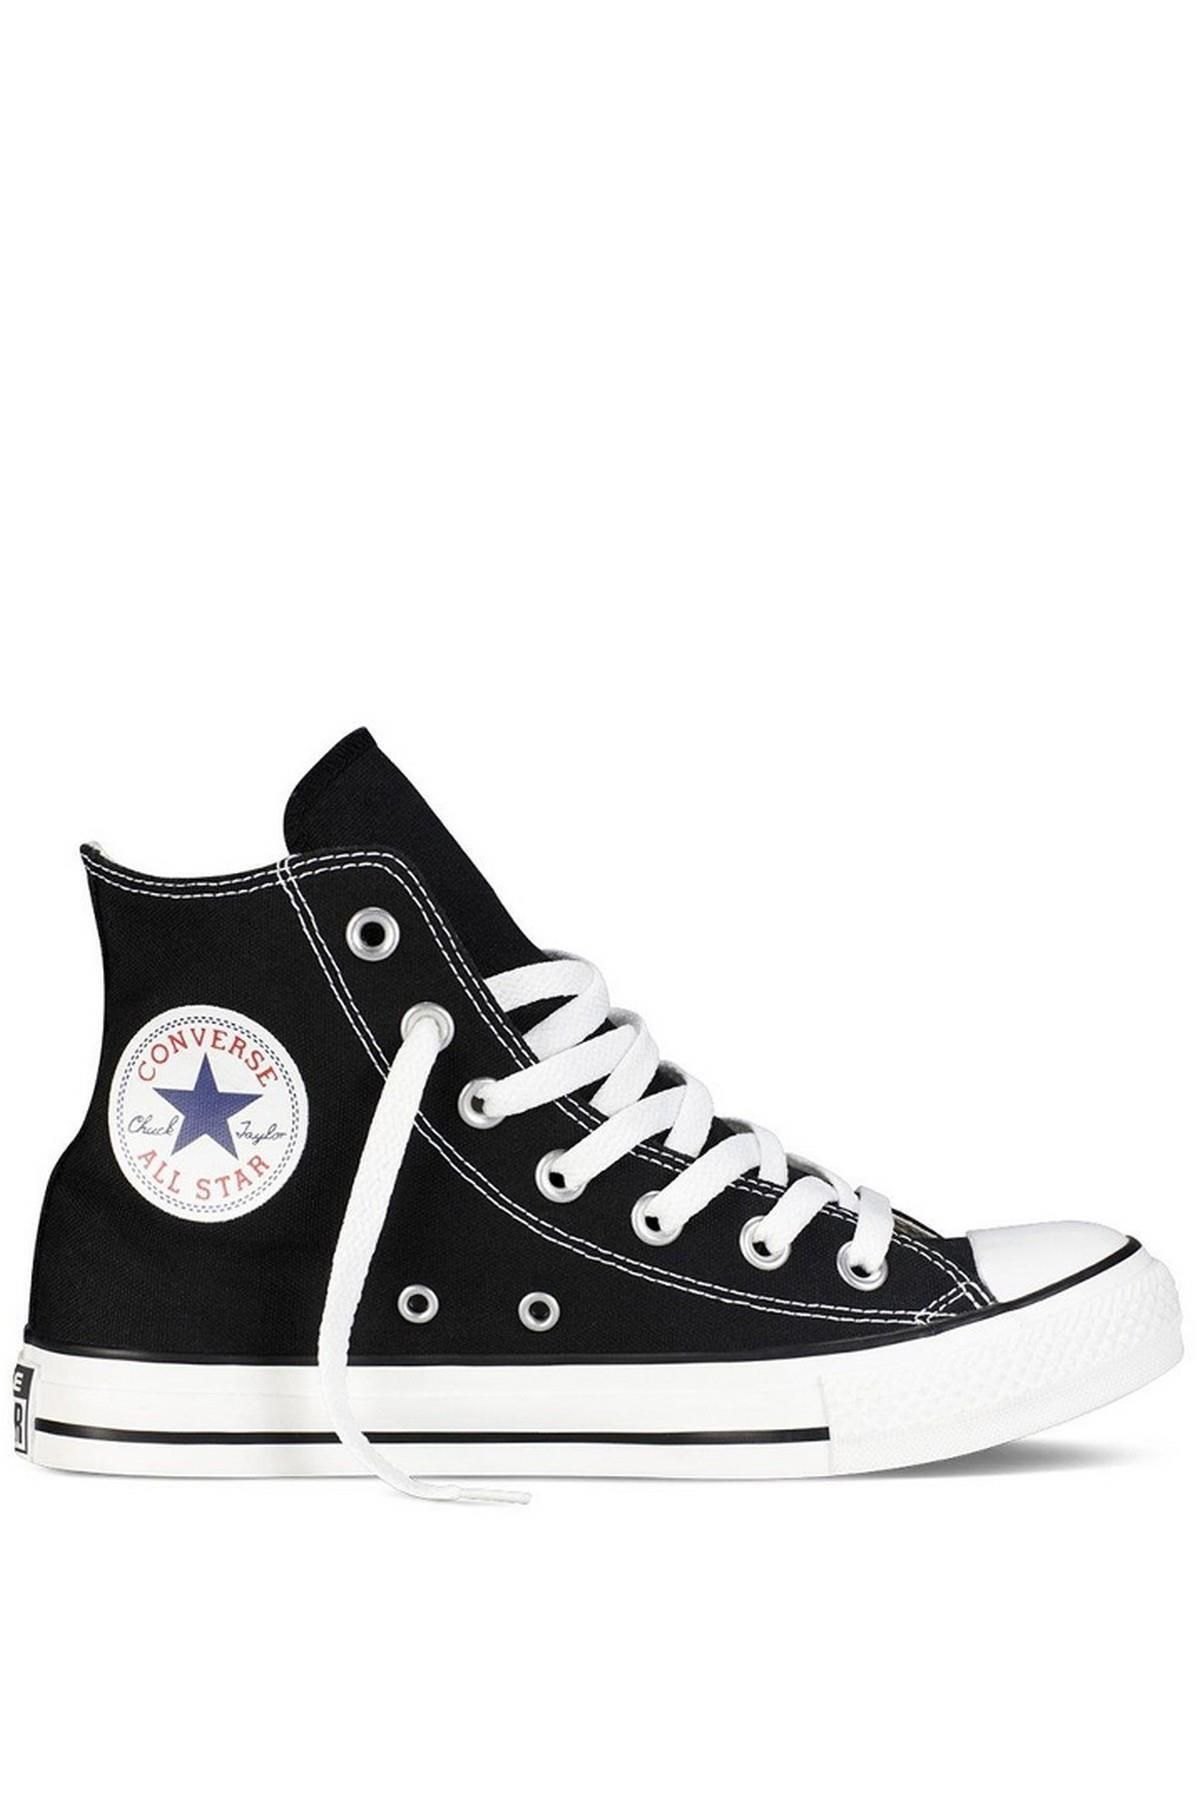 Converse M9160c - Chuck Taylor All Star Unisex Sneaker Ayakkabı